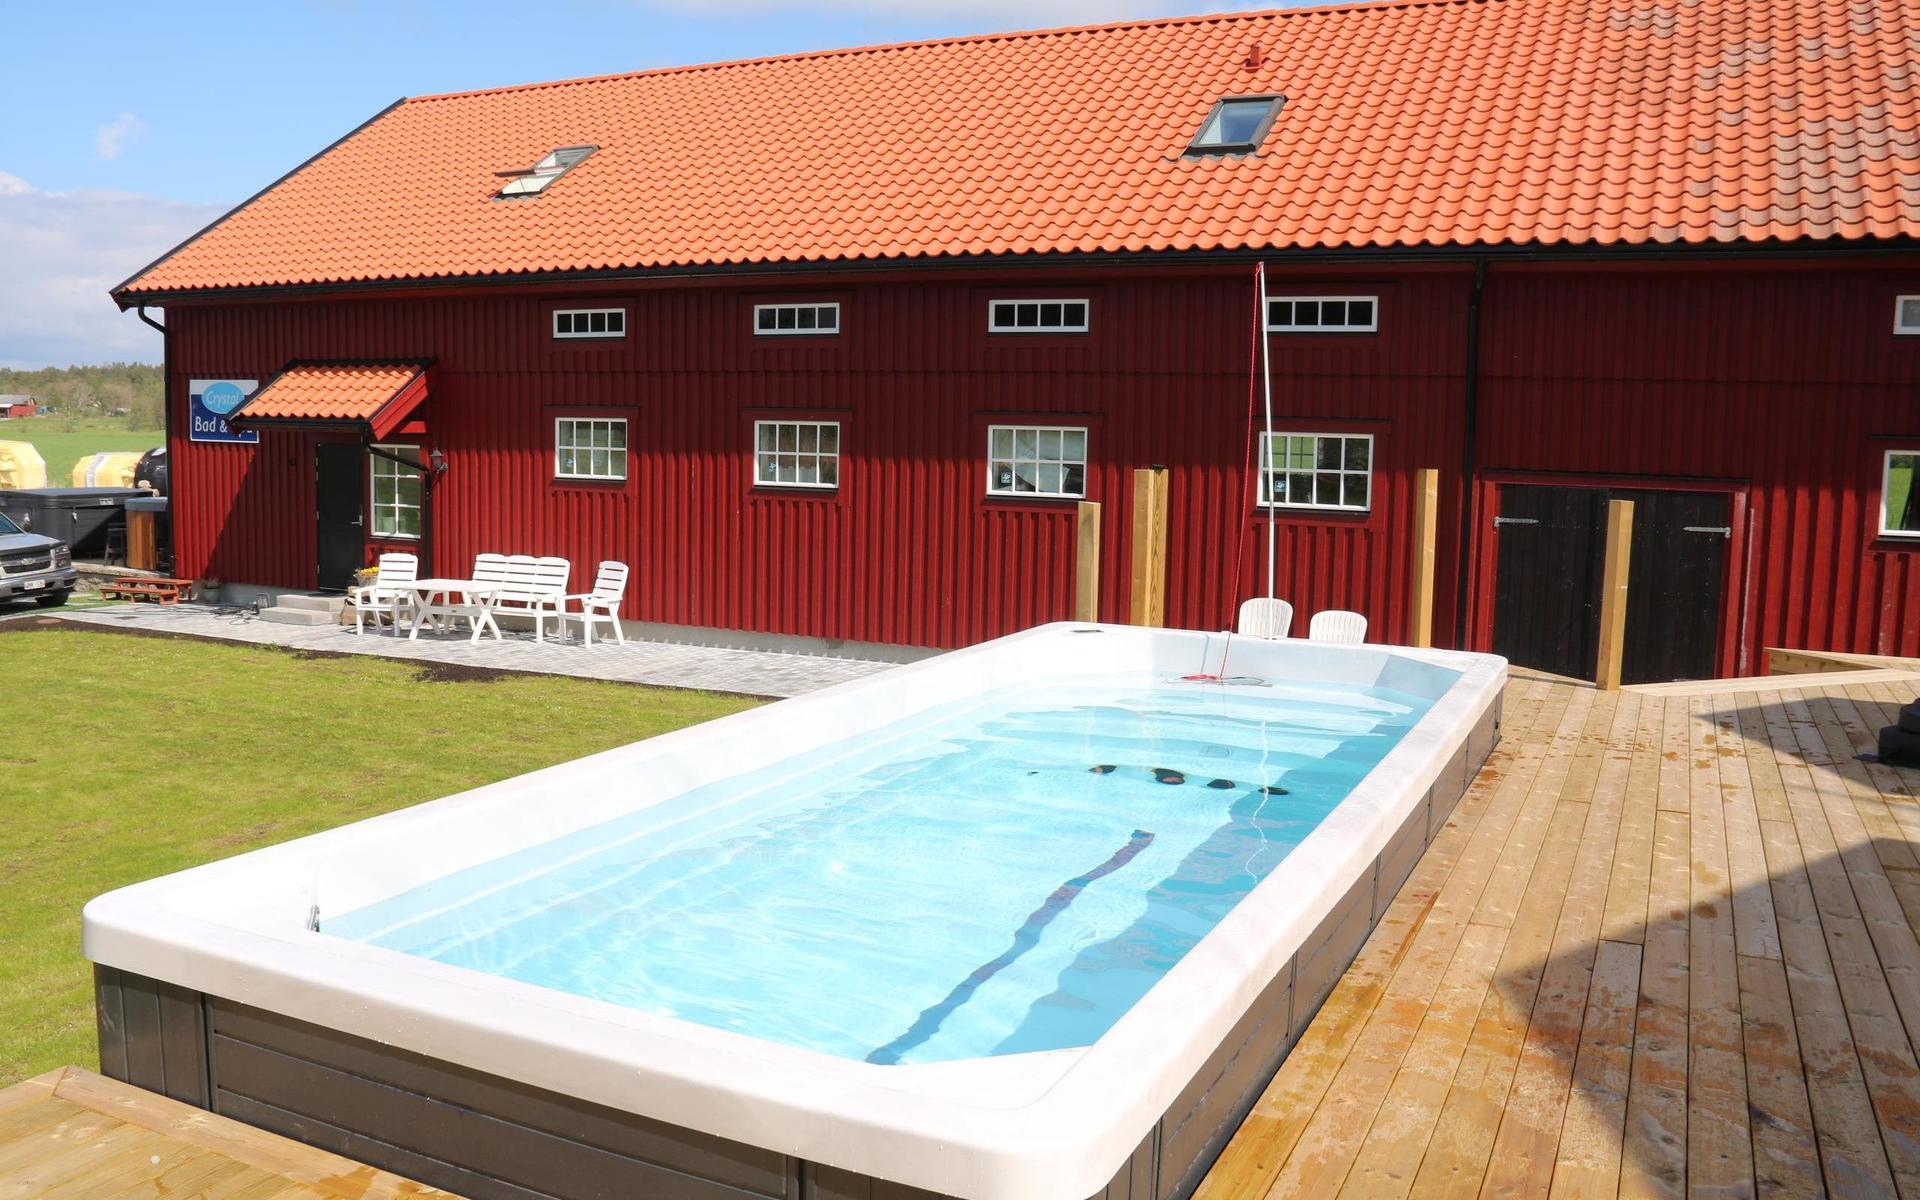 Allt fler skaffar ett Swim-spa. Mikael Gillenäng, vd för Crystal Bad och Spa har låtit installera ett hemma i Jörlanda dit han även flyttat sitt företag.